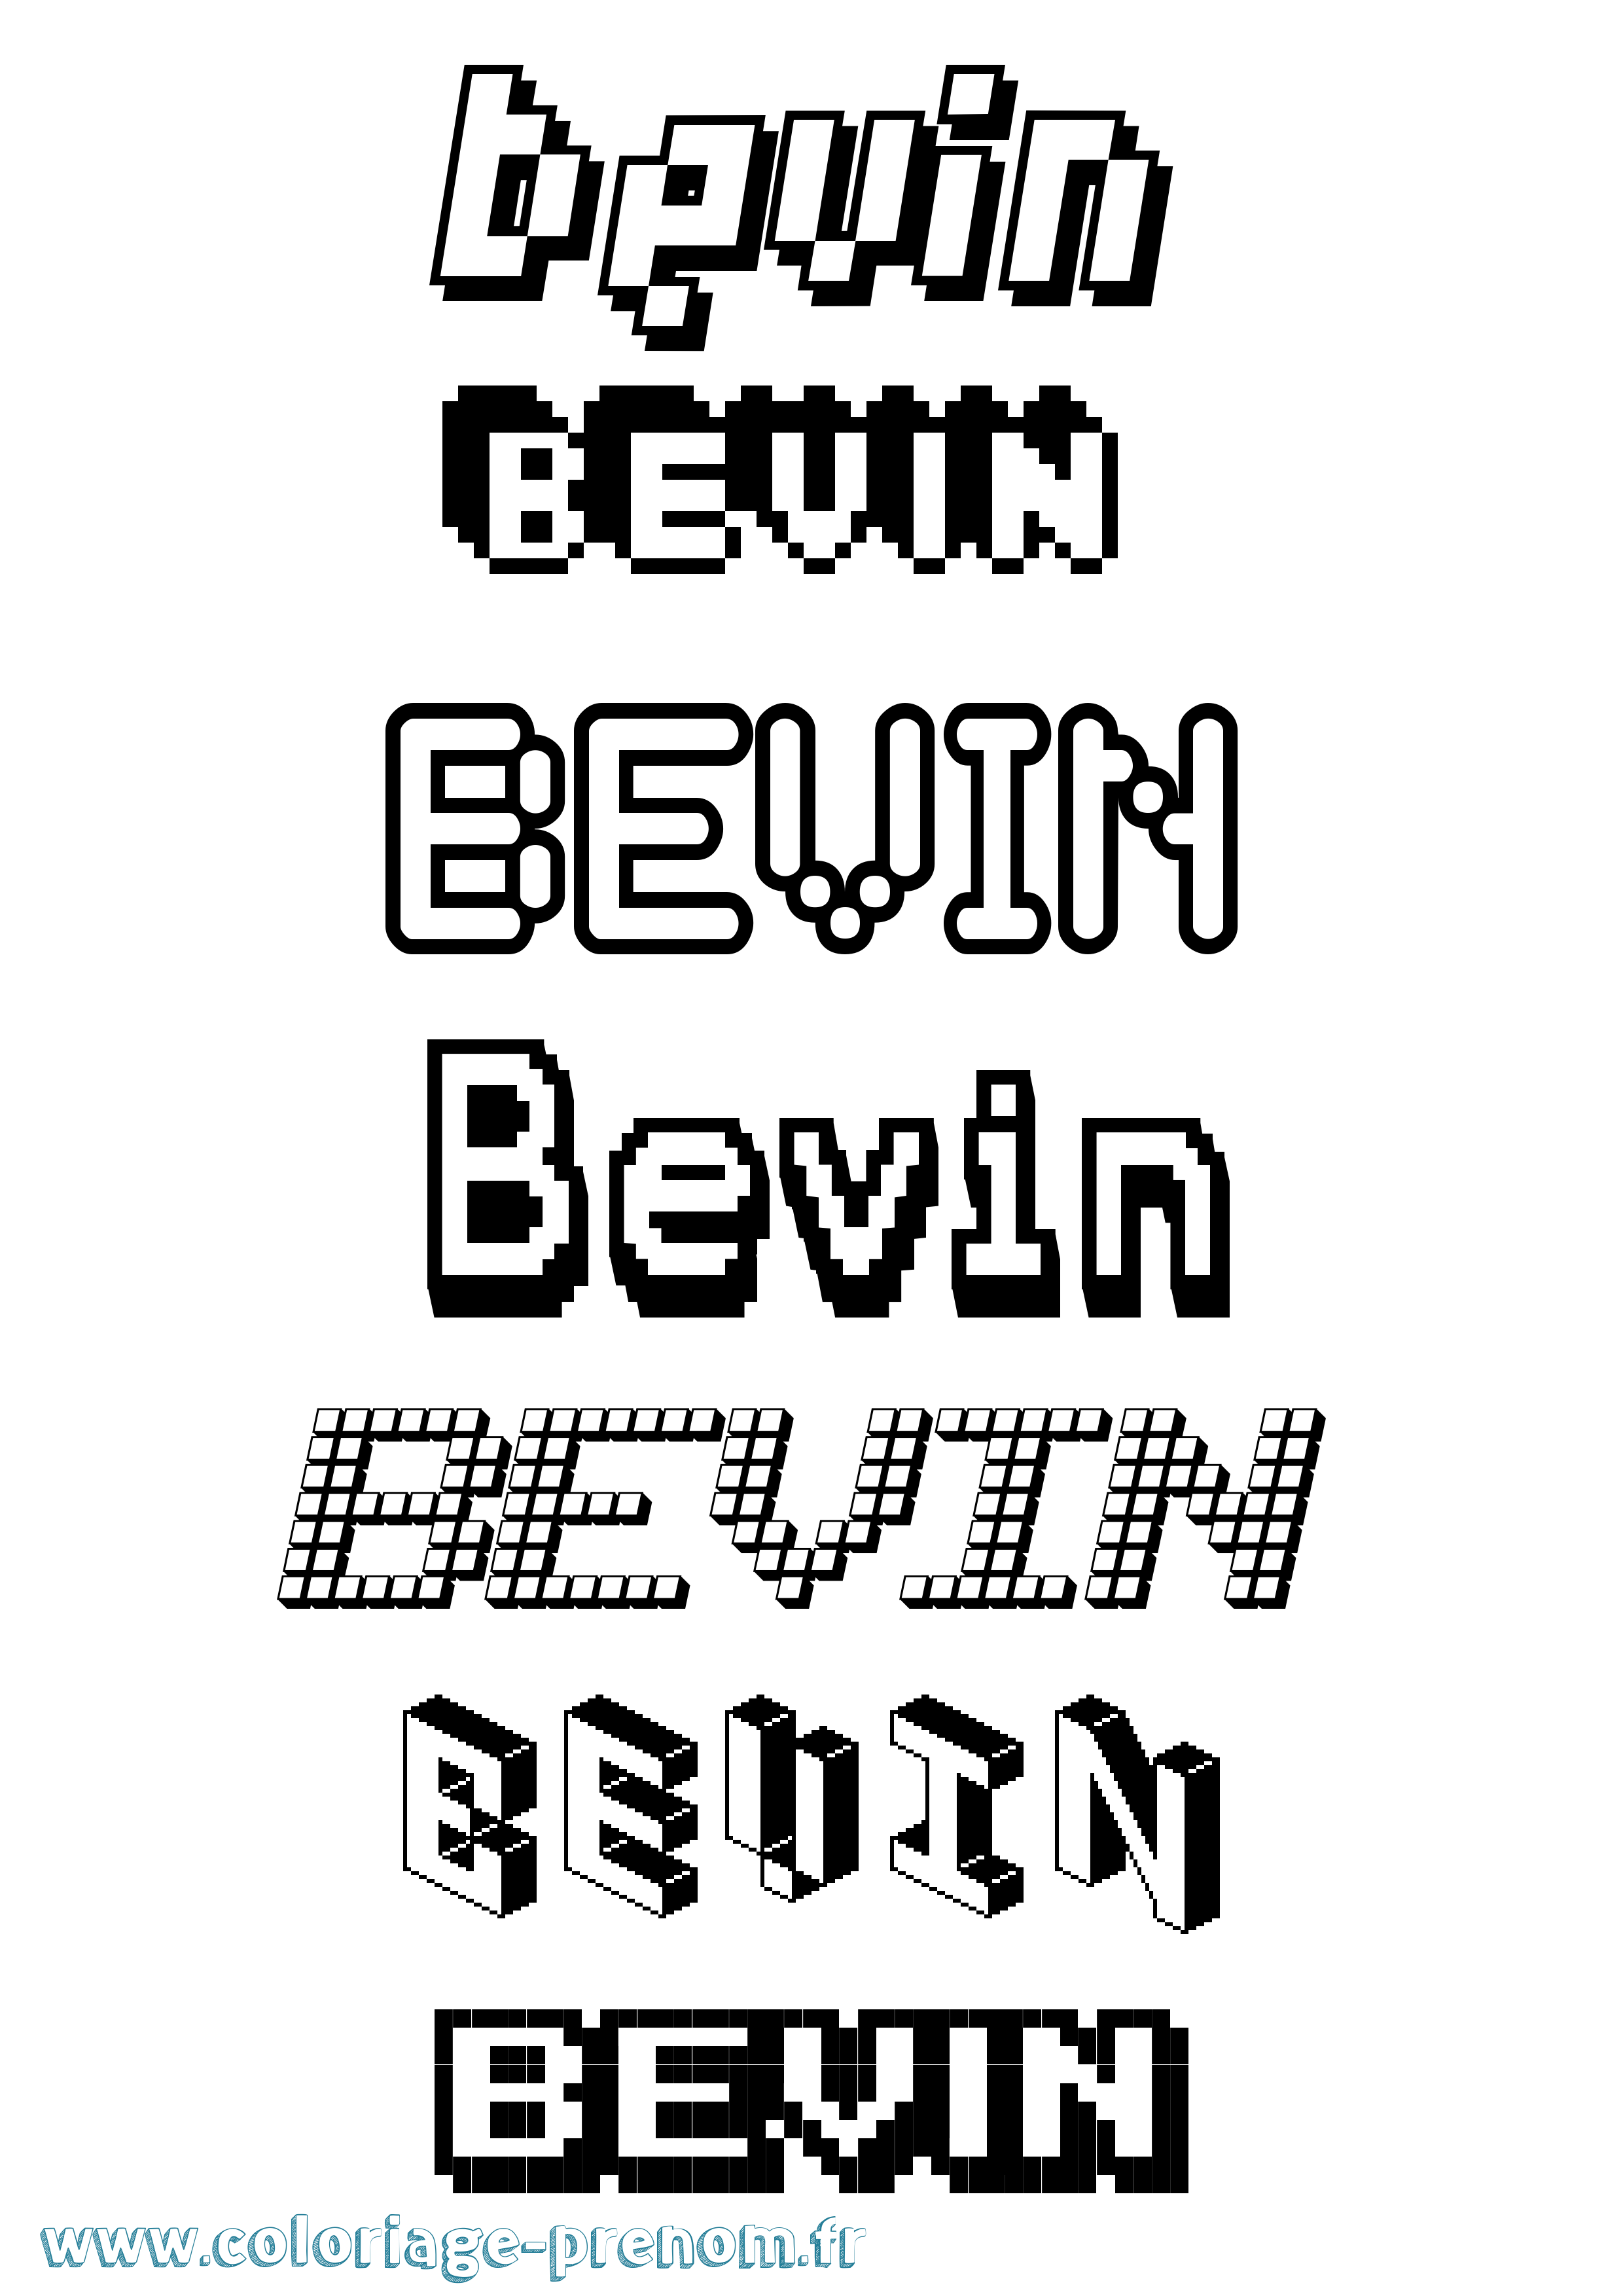 Coloriage prénom Bevin Pixel